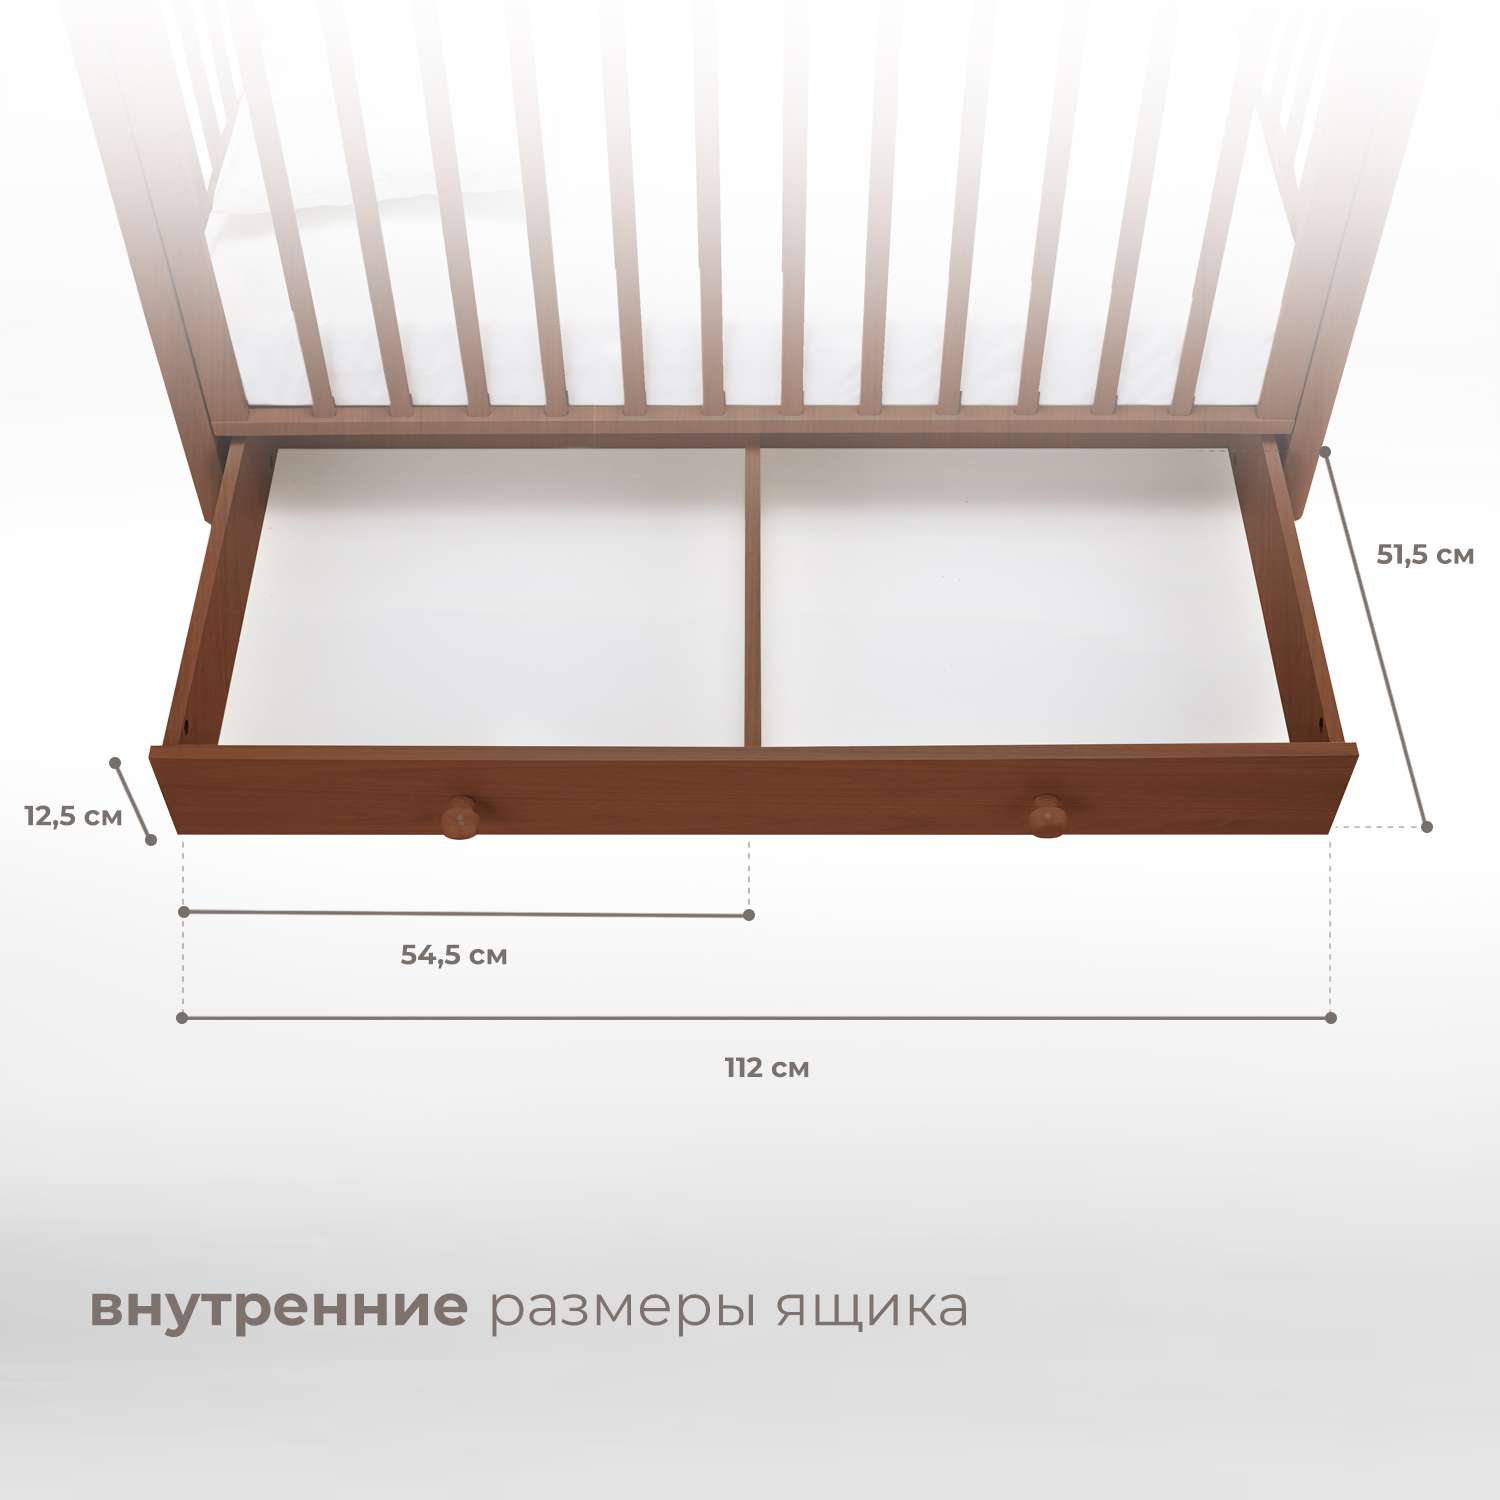 Детская кроватка Nuovita Furore Swing прямоугольная, продольный маятник (темный орех) - фото 7